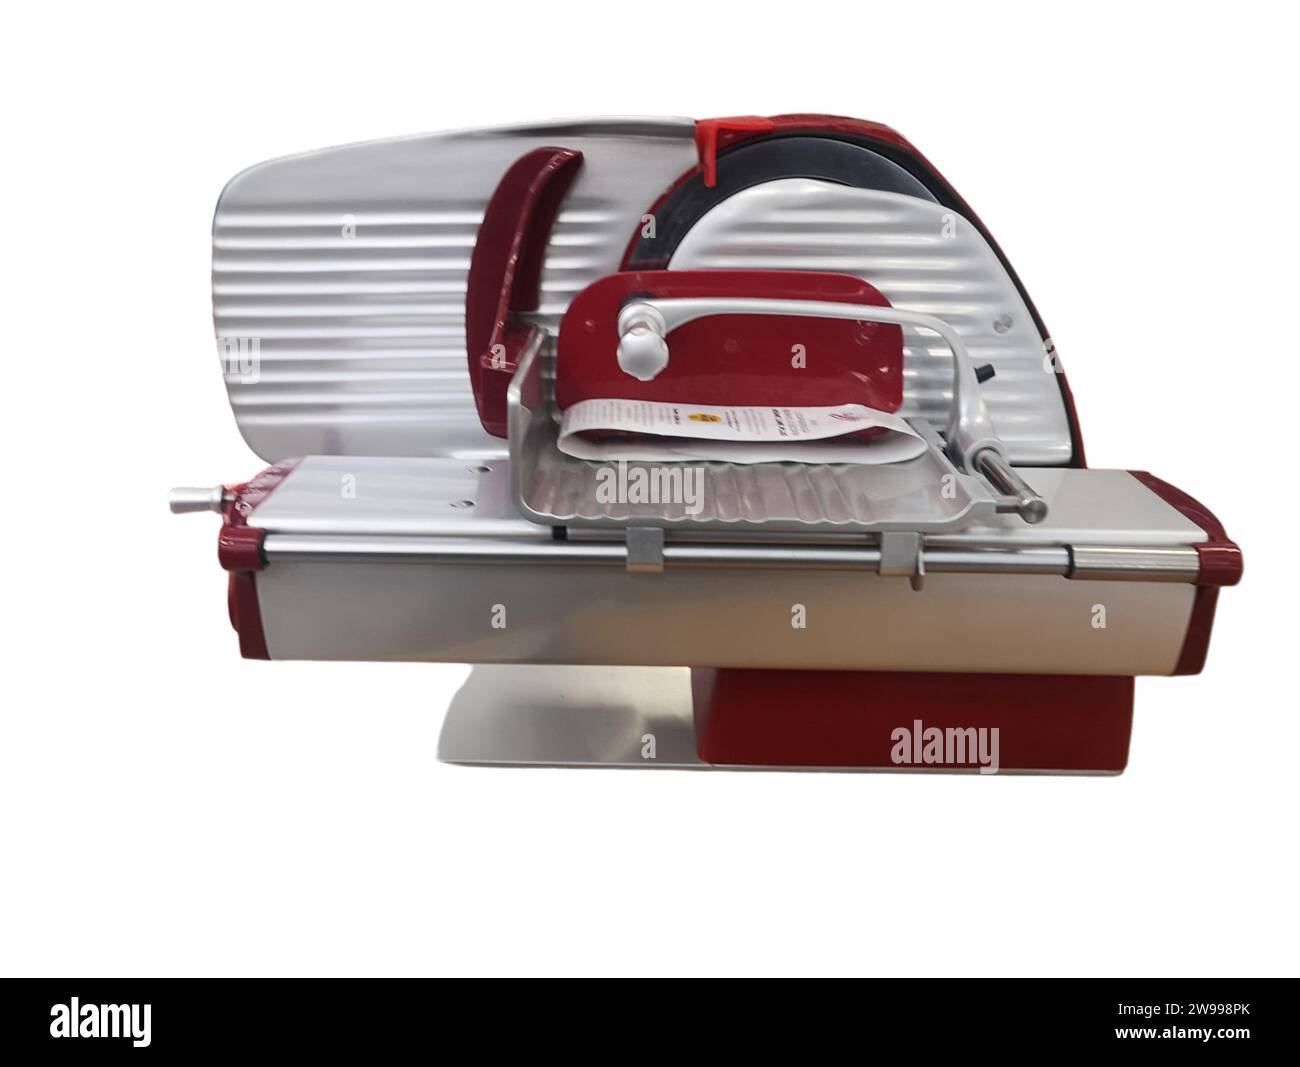 Ein Küchengerät aus Edelstahl steht auf einer weißen Arbeitsfläche Stockfoto